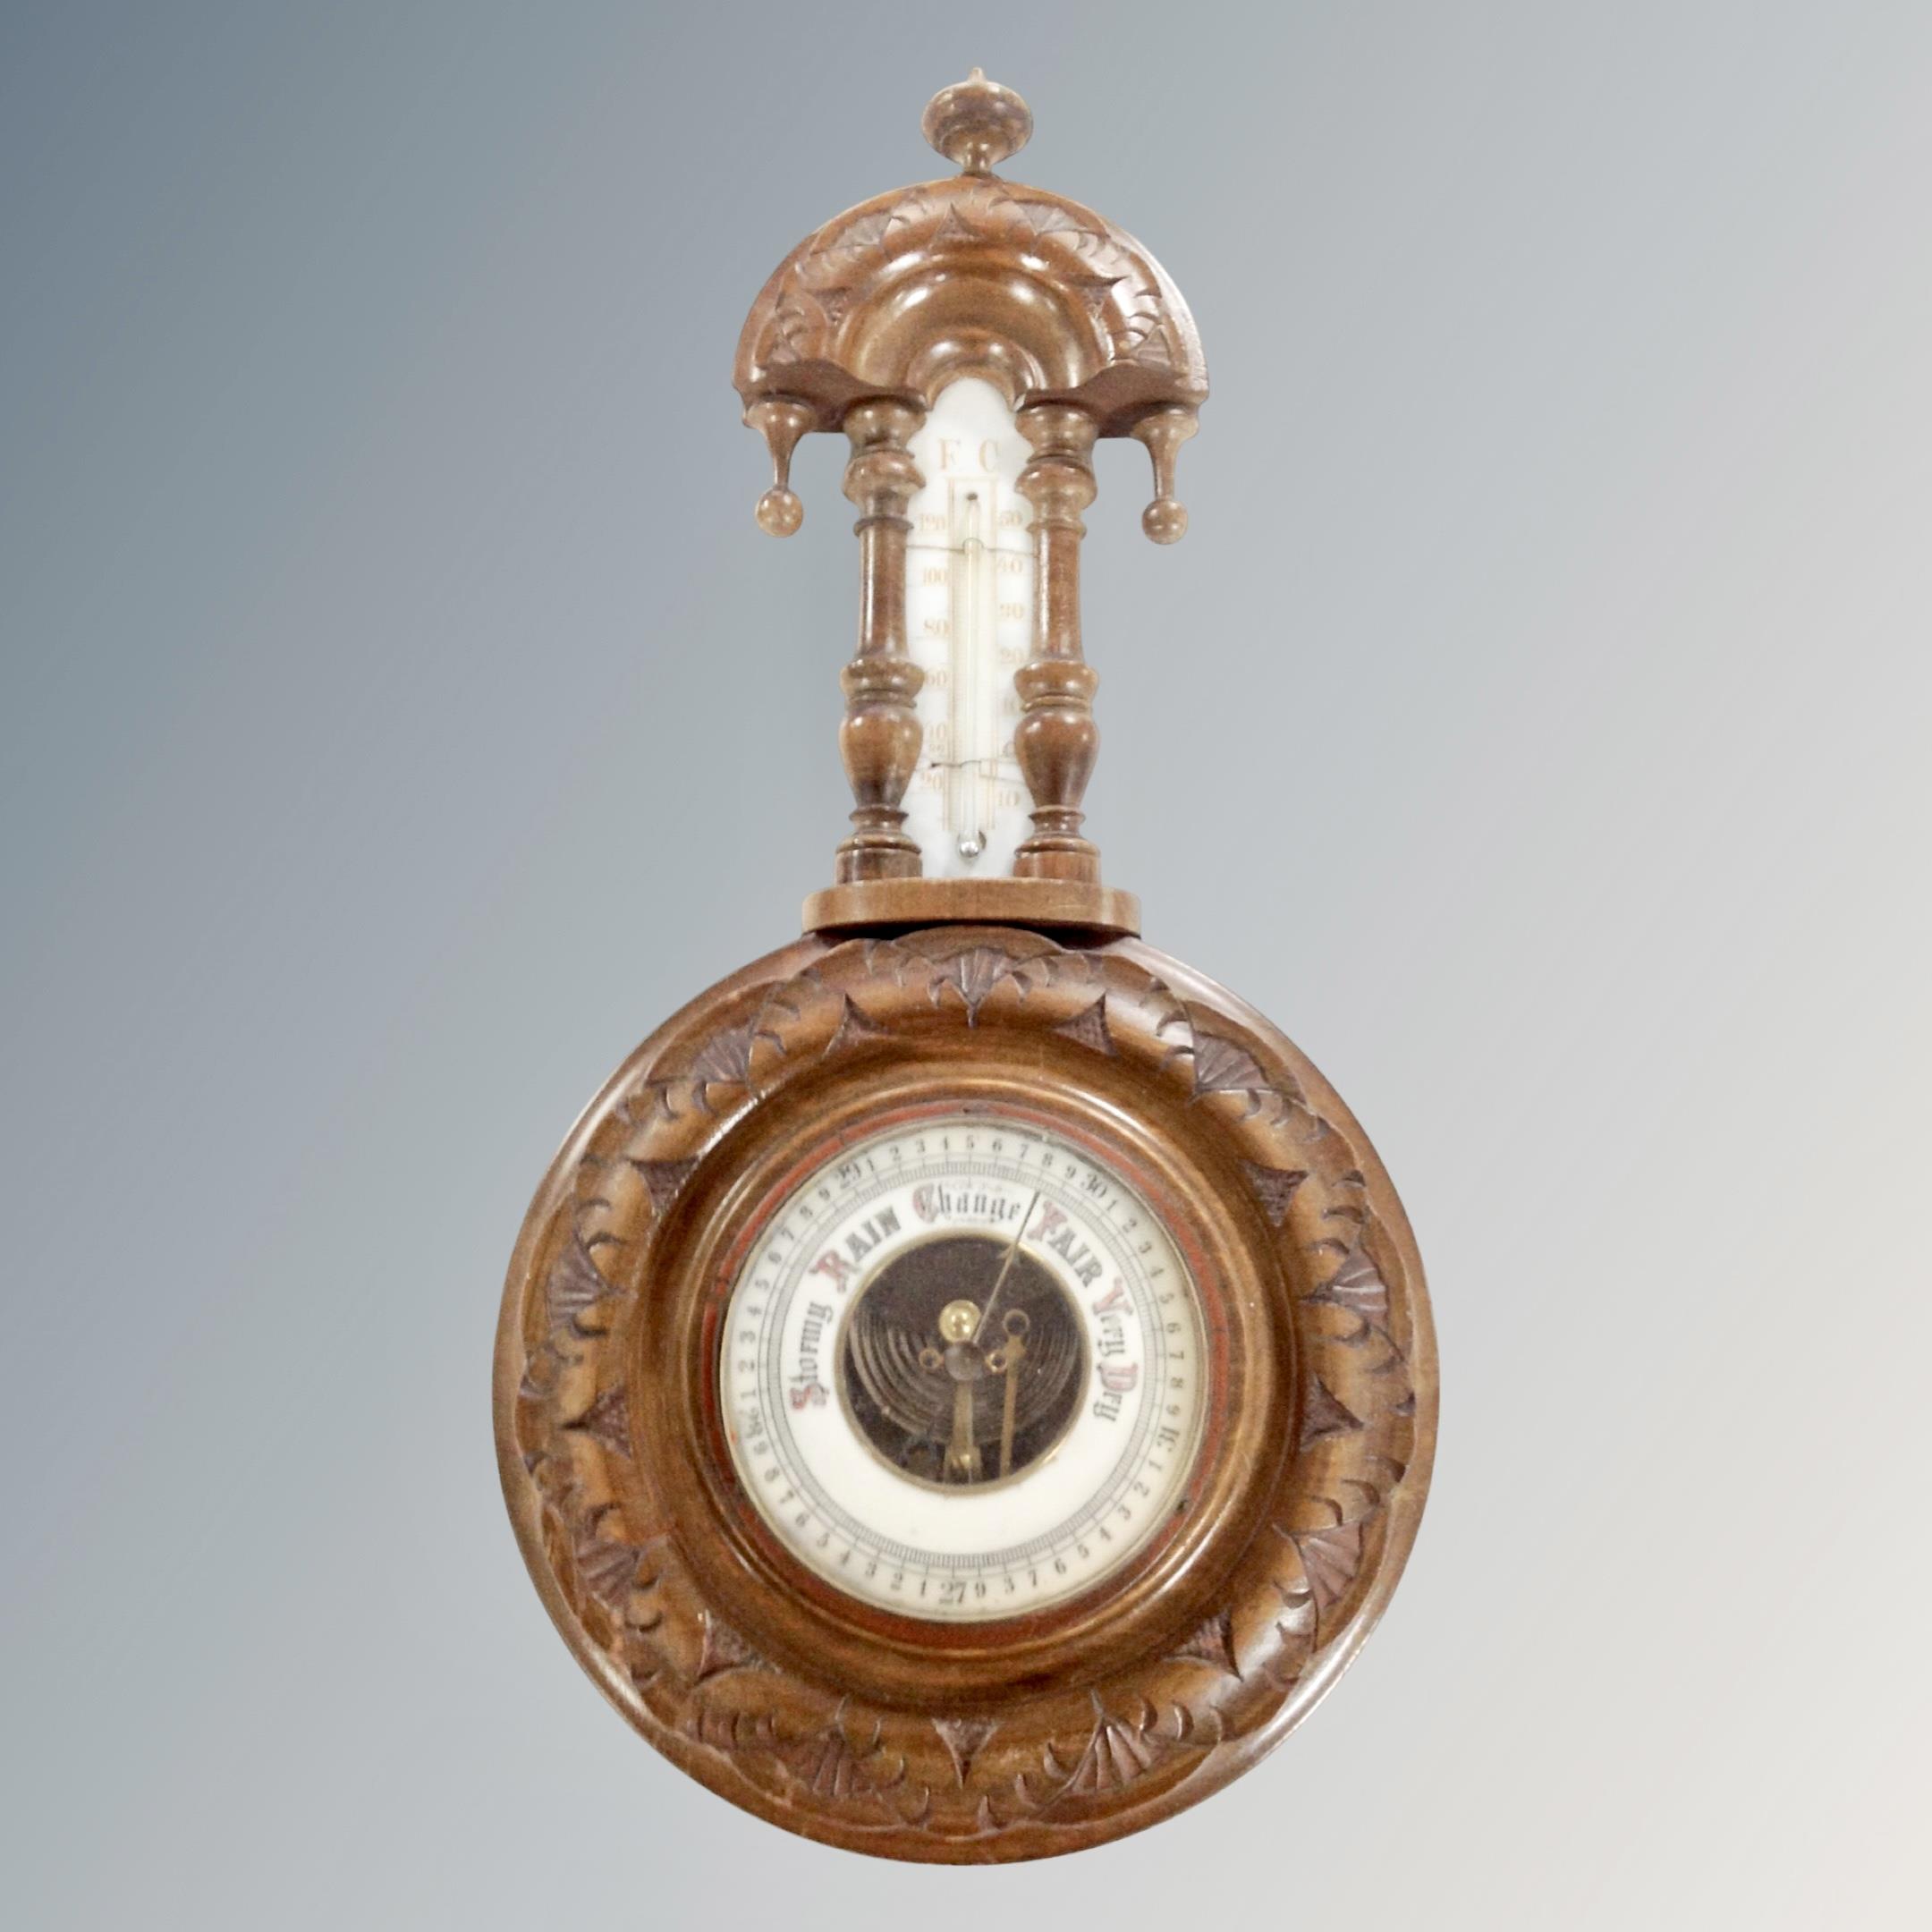 A carved Edwardian barometer